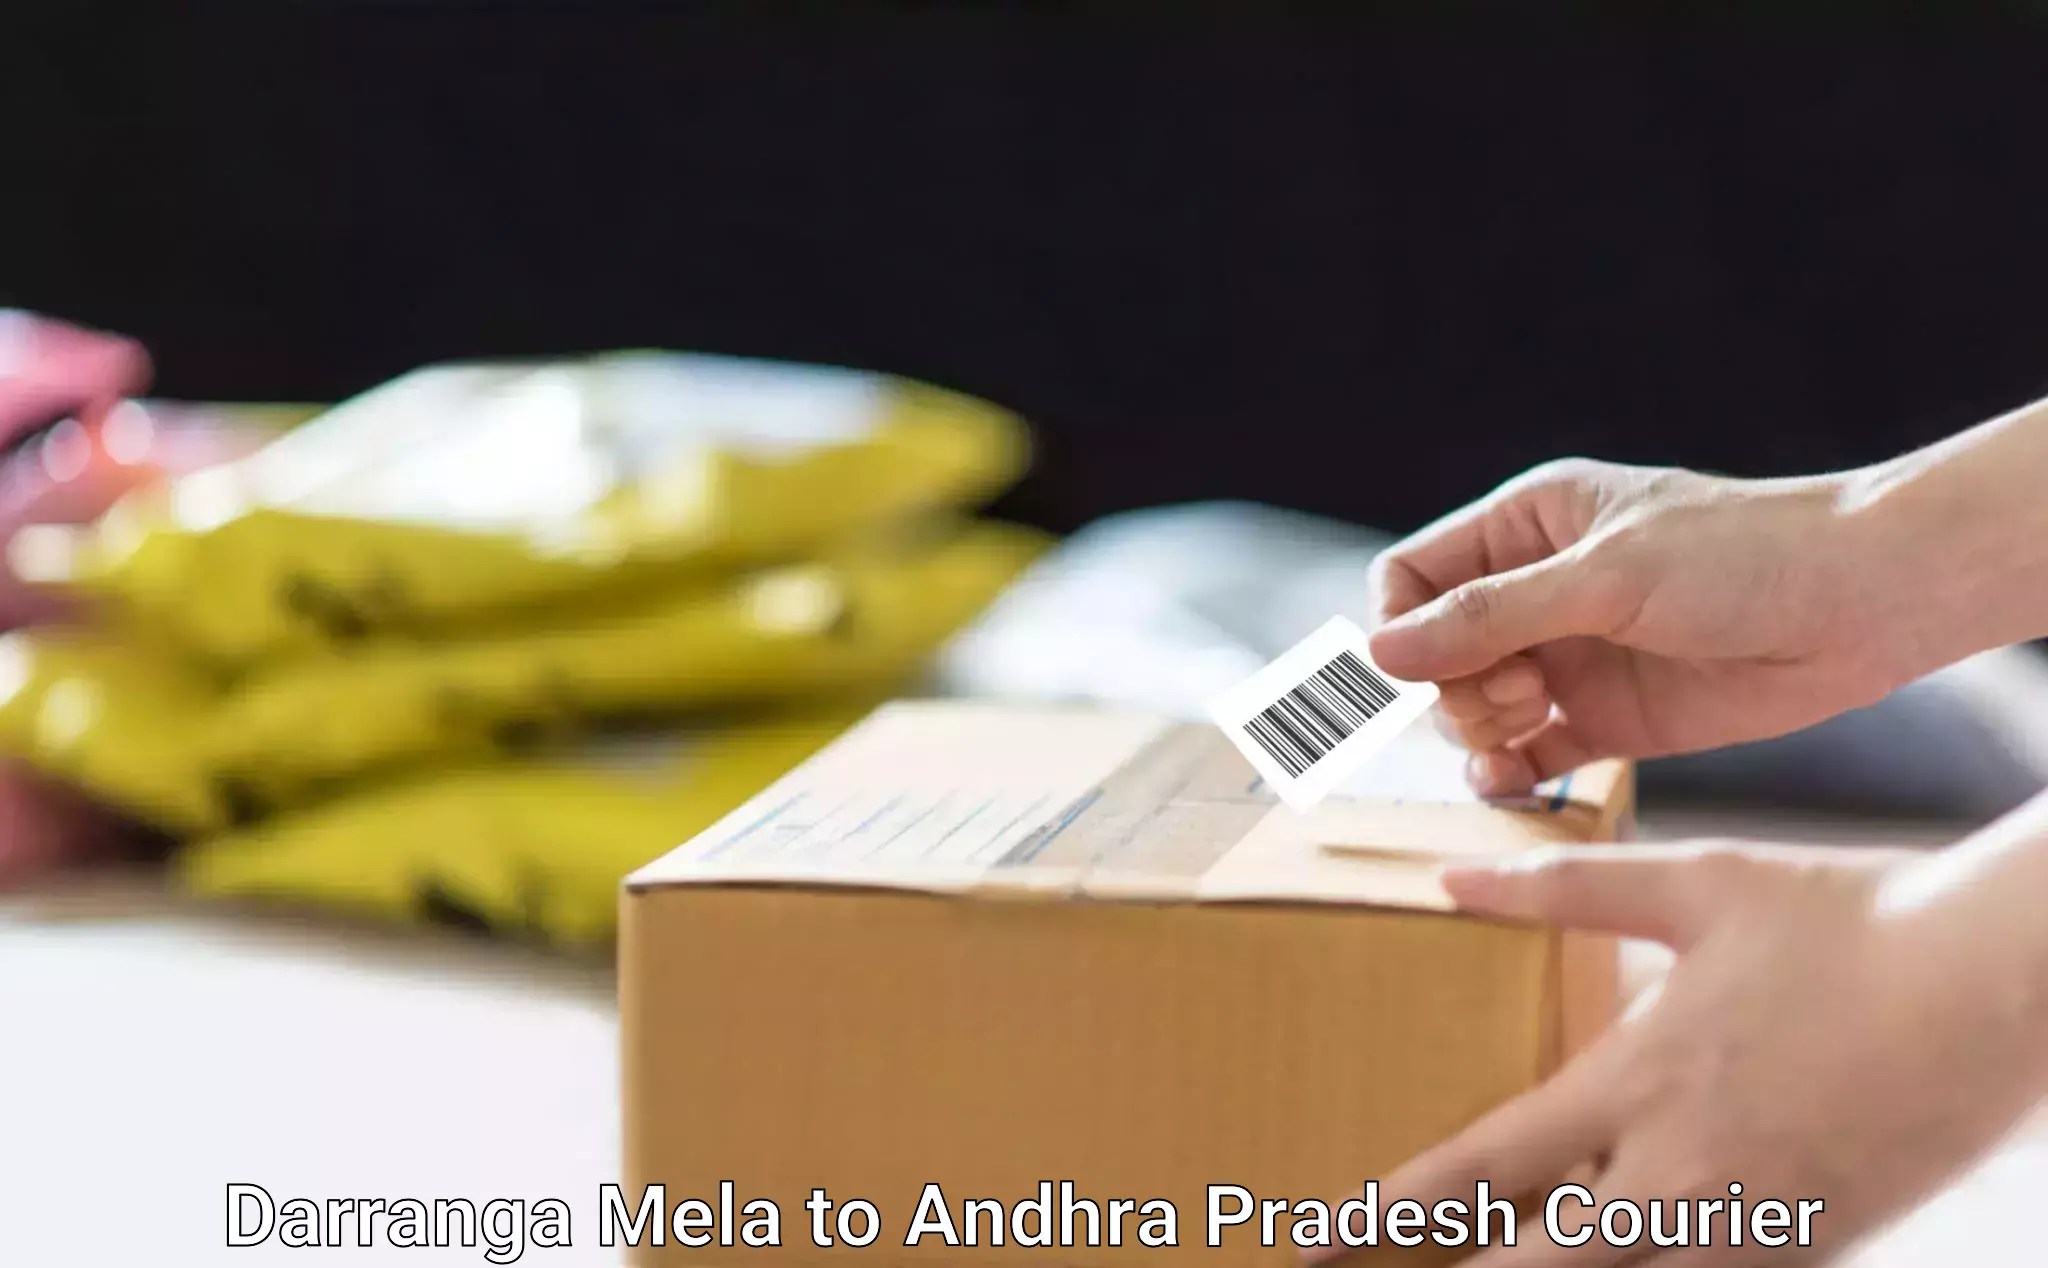 Dynamic courier operations Darranga Mela to Andhra Pradesh